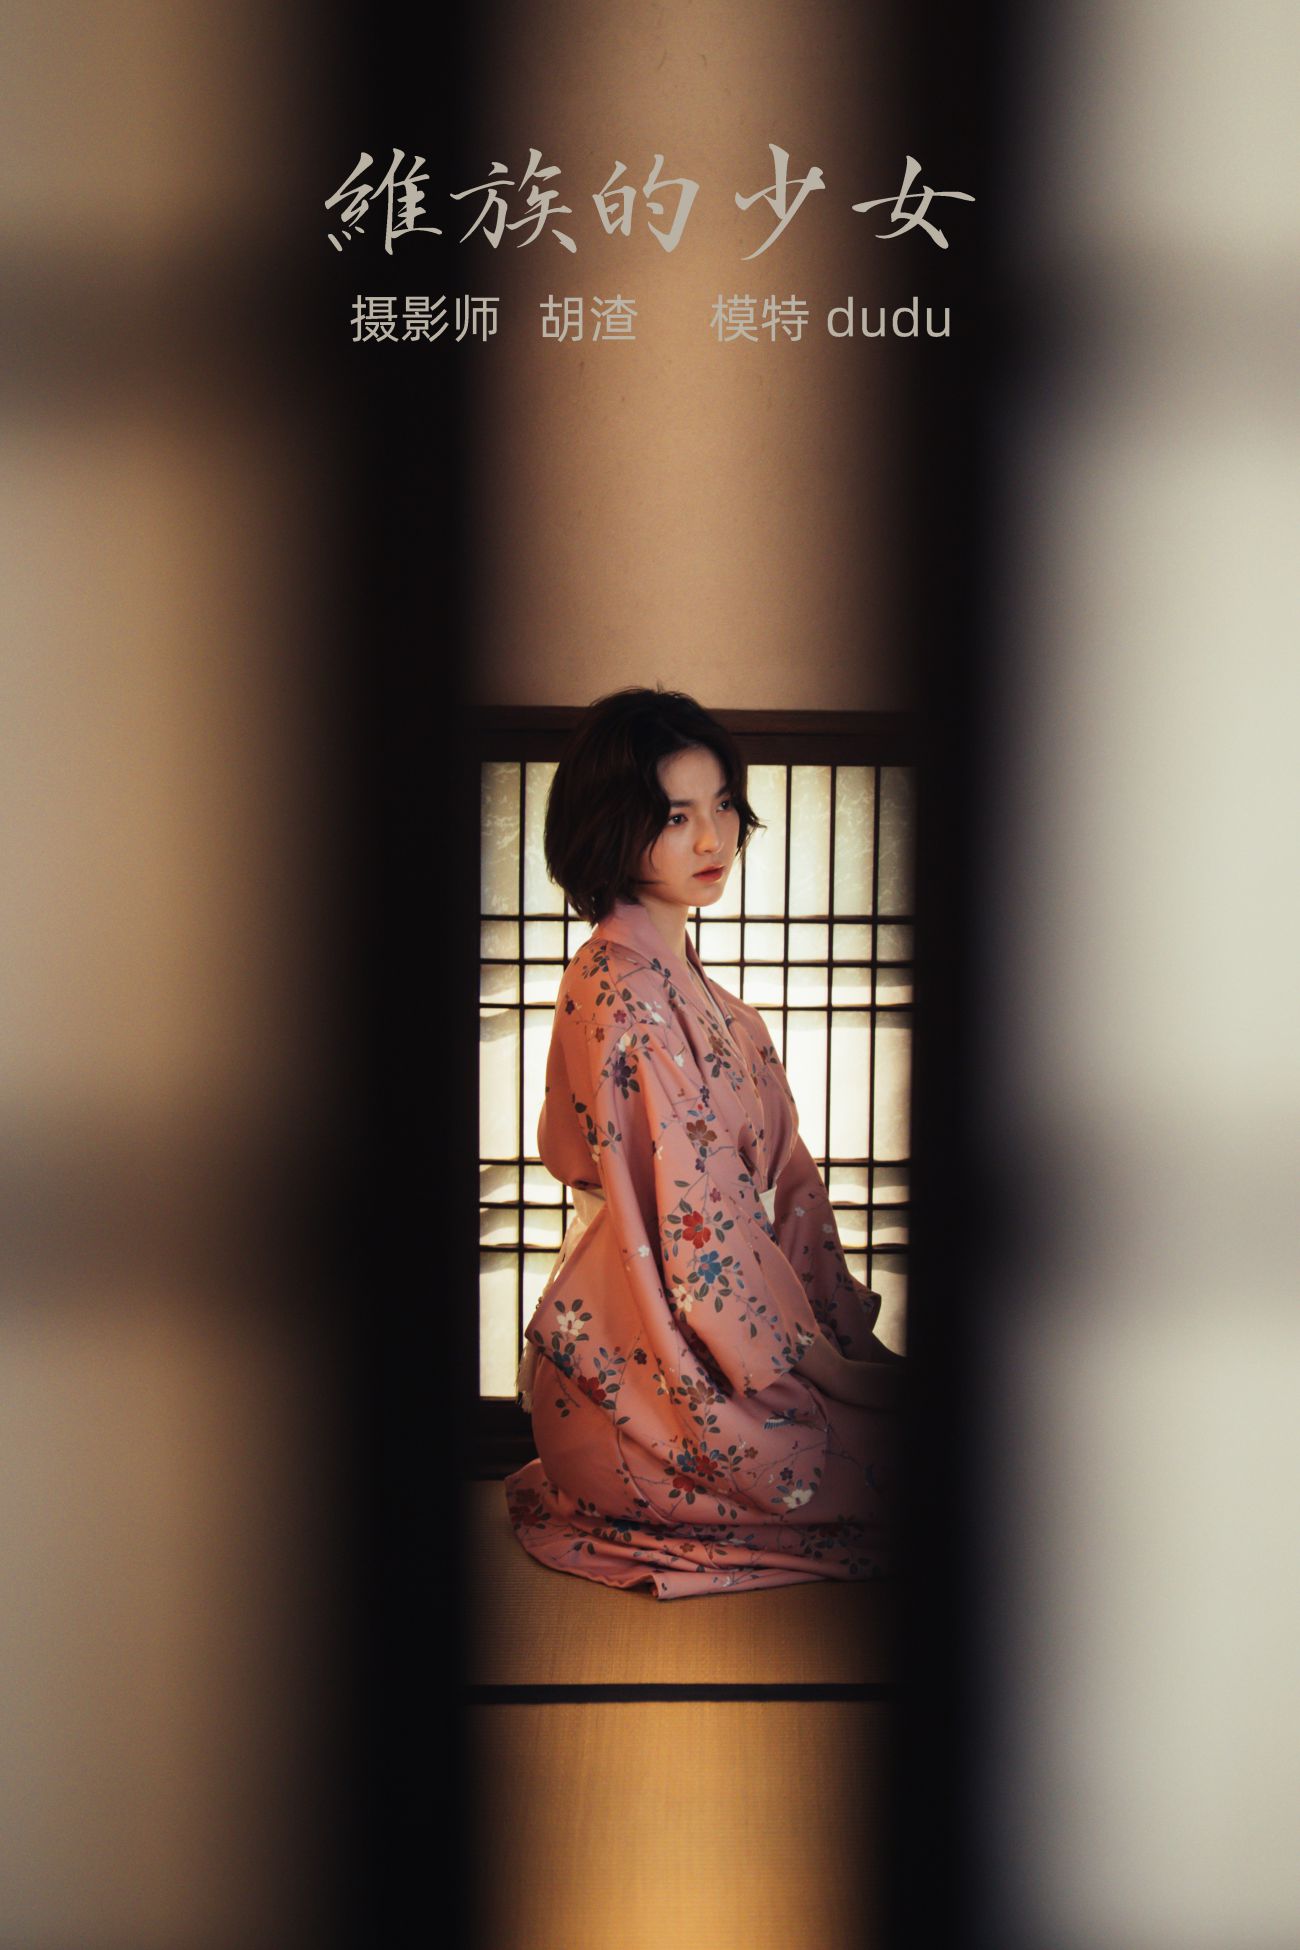 YITUYU艺图语模特唯美写真2021.11.19期维族的少女 dudu (32)